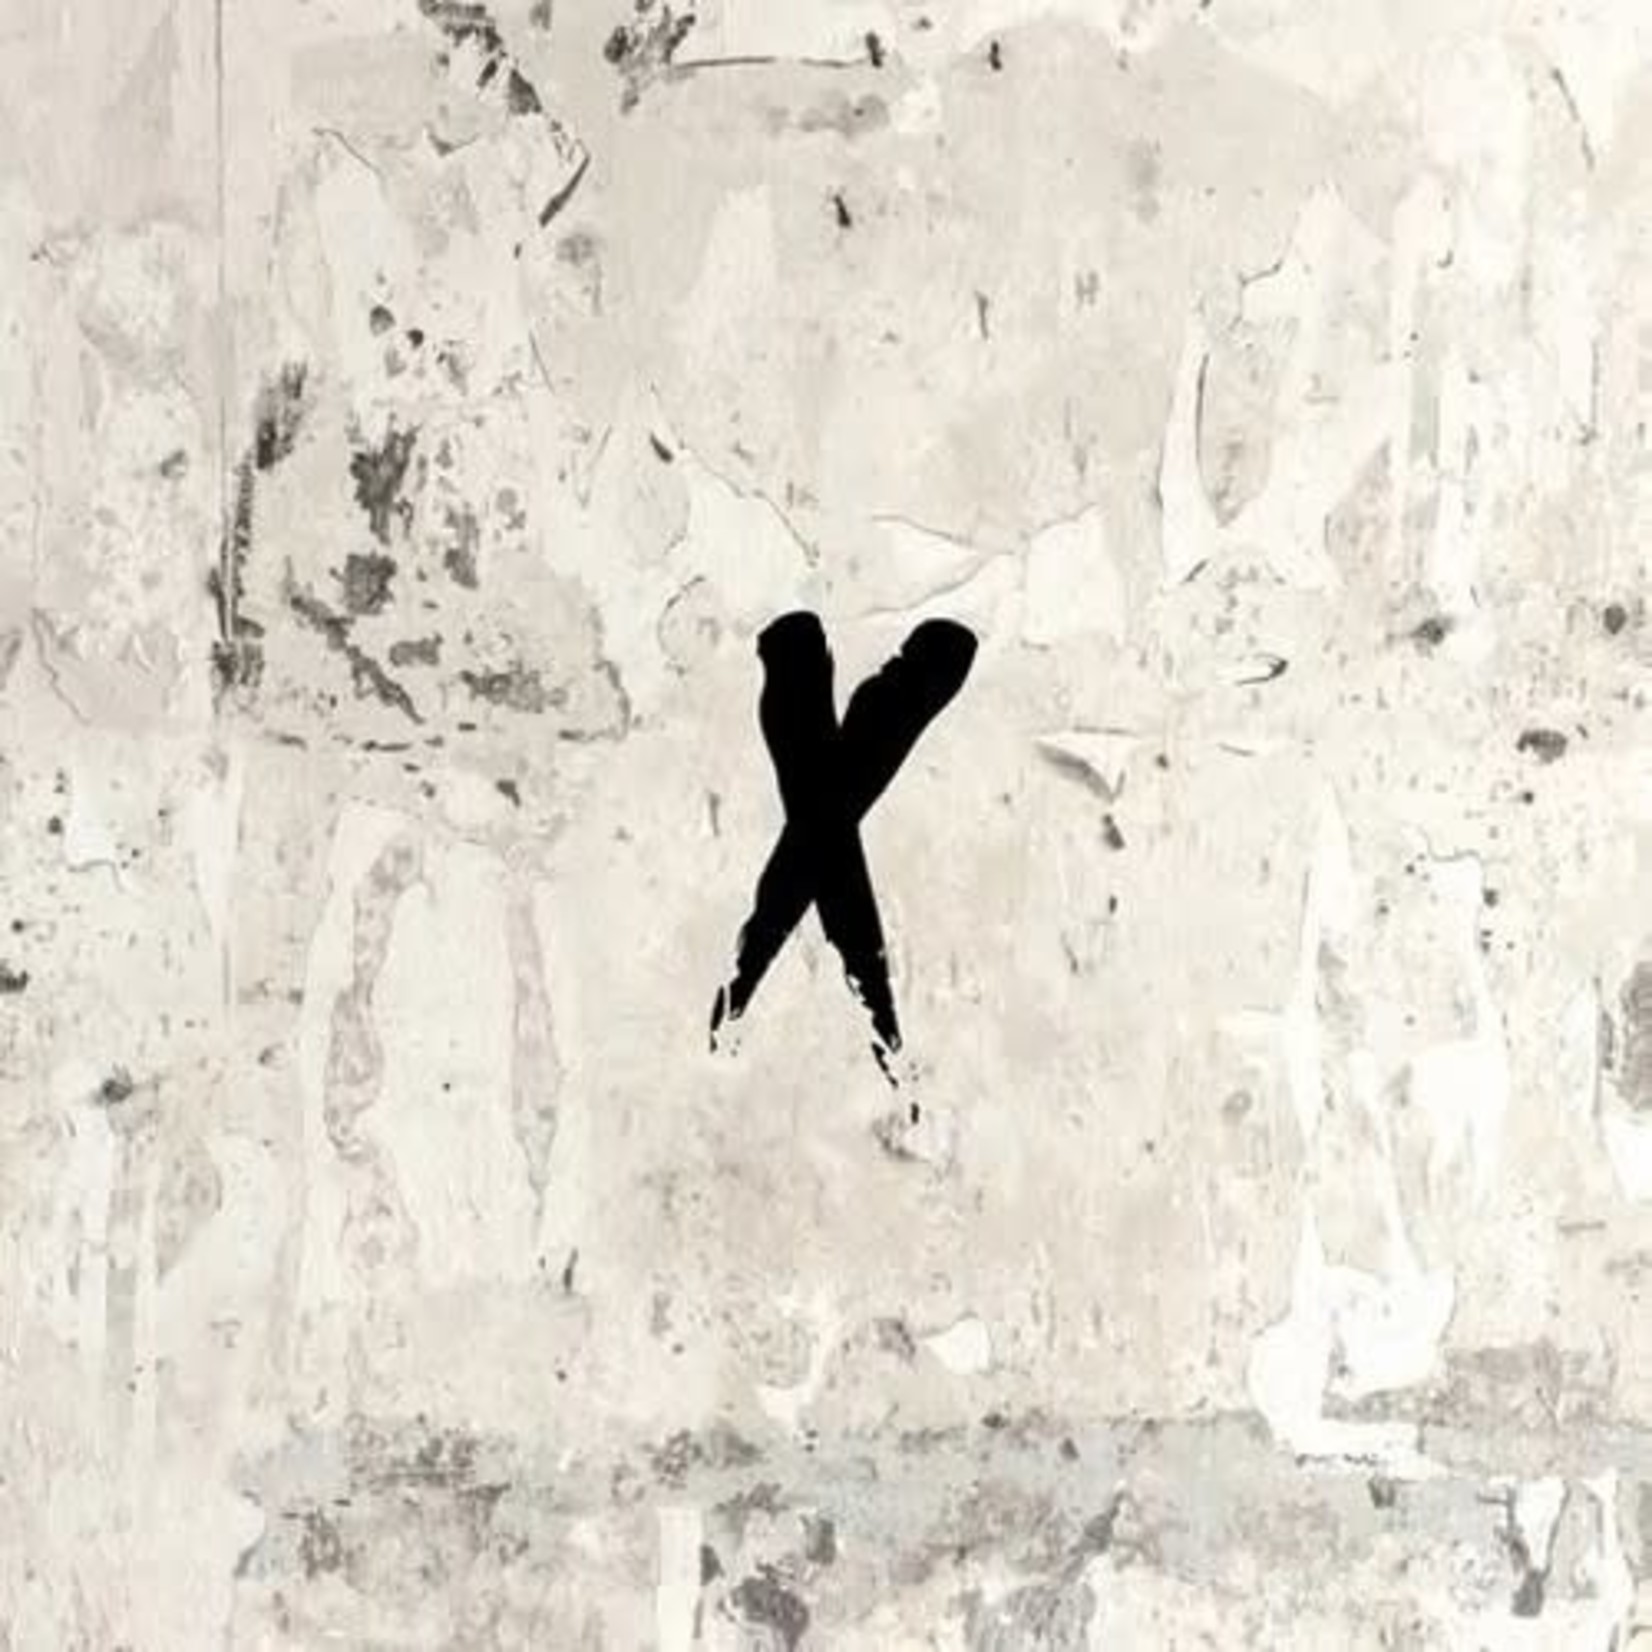 [New] NxWorries (Anderson.Paak & Knxwledge) - Yes Lawd! (2LP)